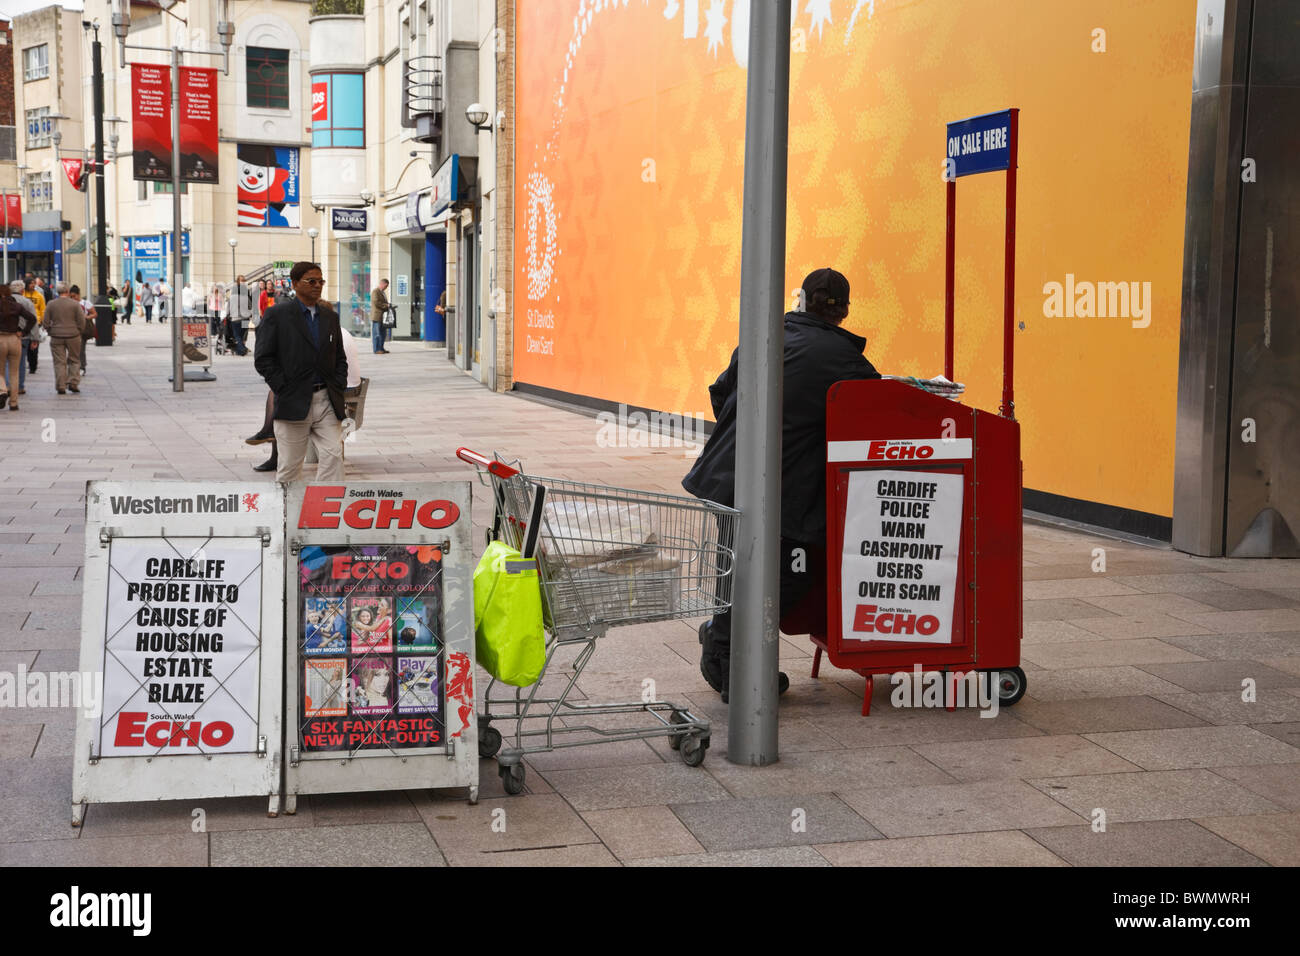 Vente vender de rue les journaux locaux à partir d'un kiosque dans le centre-ville. Cardiff, Glamorgan, Pays de Galles, Royaume-Uni Banque D'Images